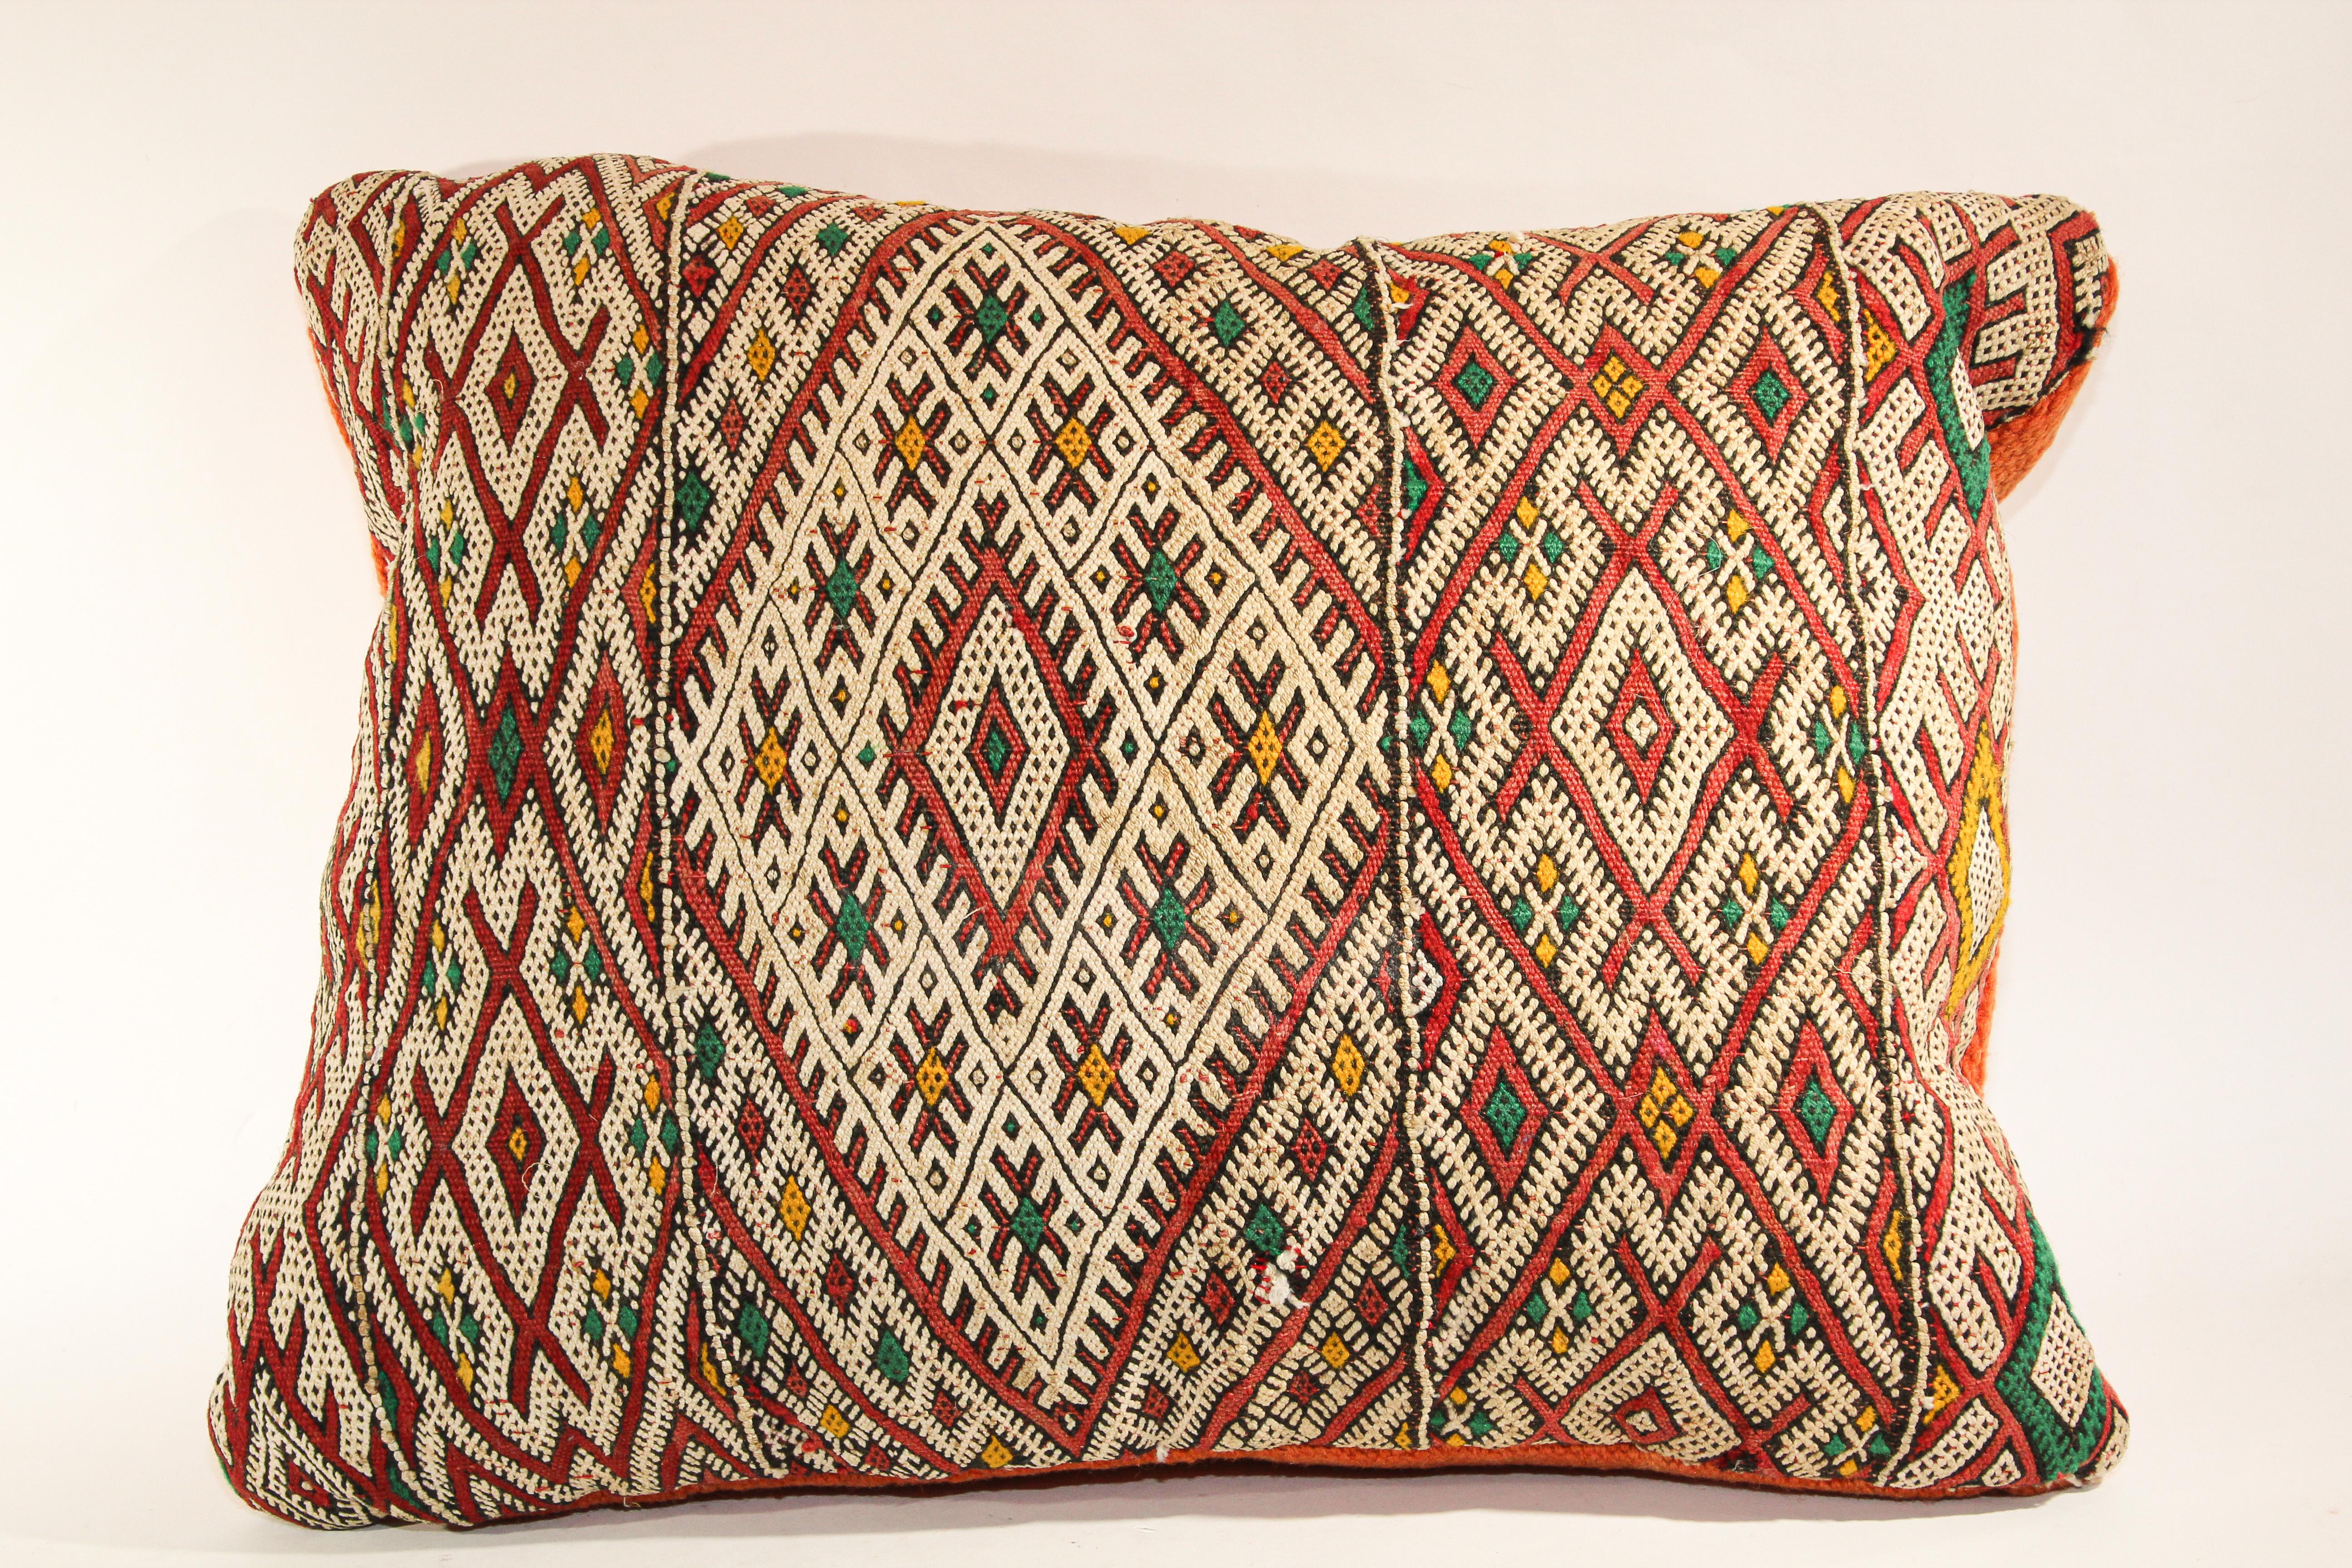 Marokkanisches ethnisches, handgewebtes Stammeskissen aus einem Vintage-Teppich.
Die Vorderseite dieses Berberkissens und die Rückseite sind aus einem anderen Teppich gefertigt, die Vorderseite ist aufwändiger und die Rückseite ist